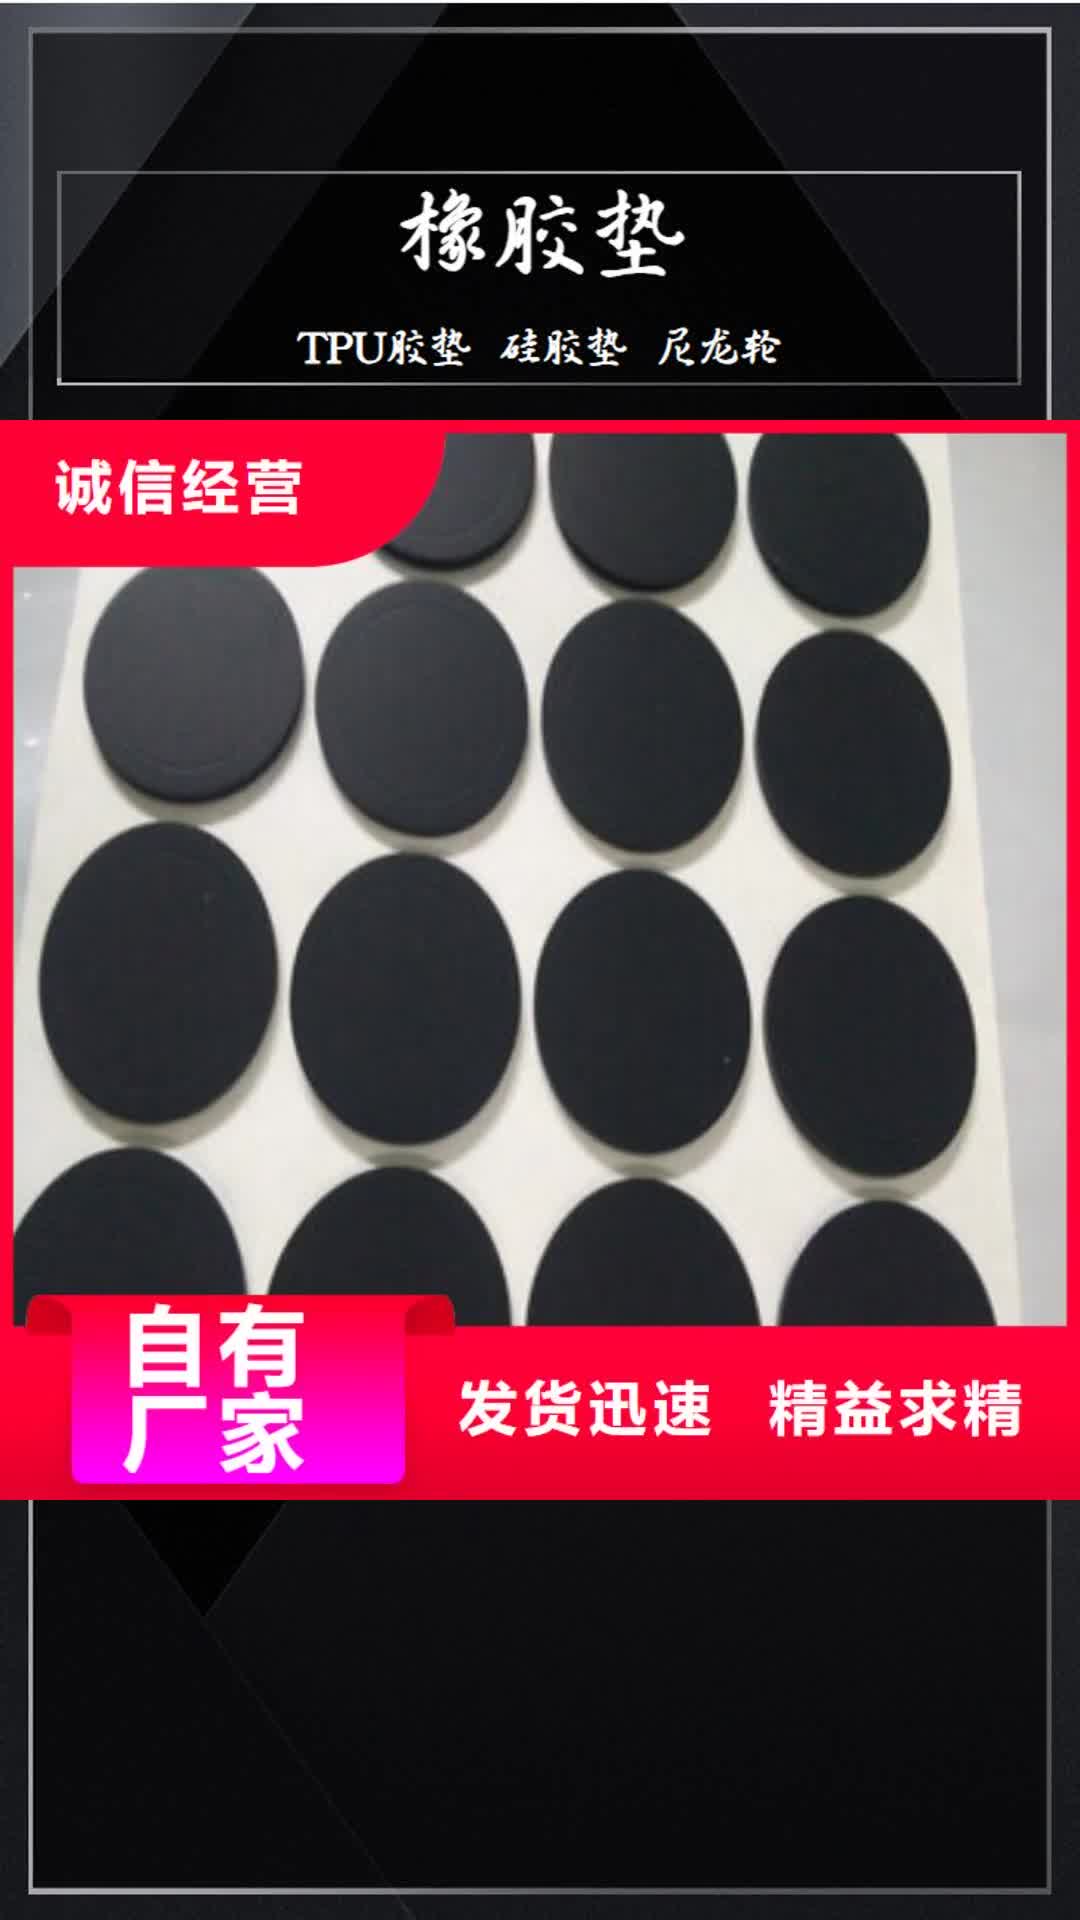 【惠州 橡胶垫,杀菌锅塑料隔板质检严格放心品质】